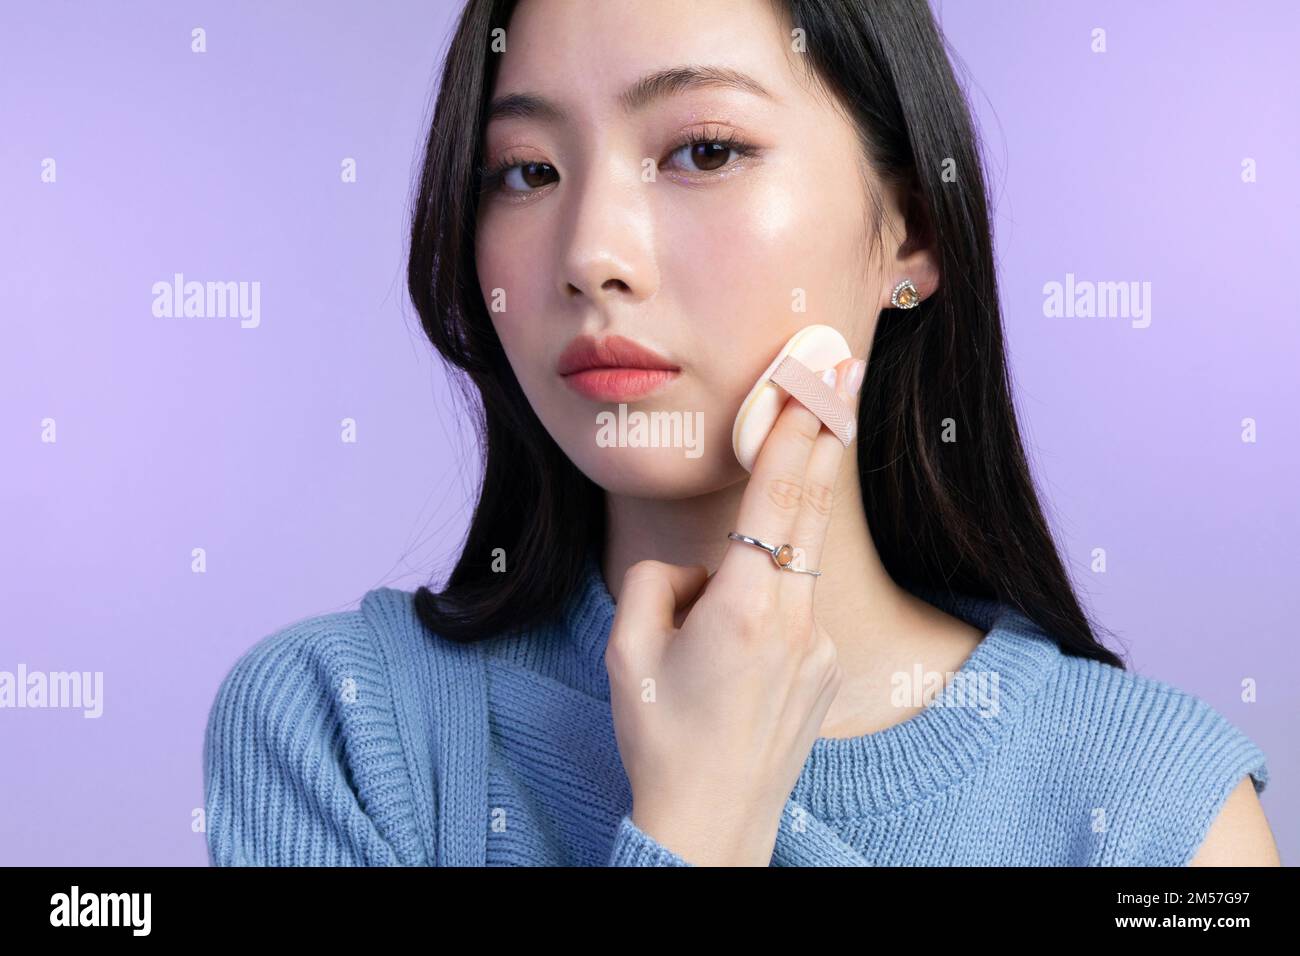 Wunderschöne junge koreanische asiatische Frau Porträtfoto im Winter Haut  Schönheit und Kosmetik Konzept Haut Make-up Stockfotografie - Alamy